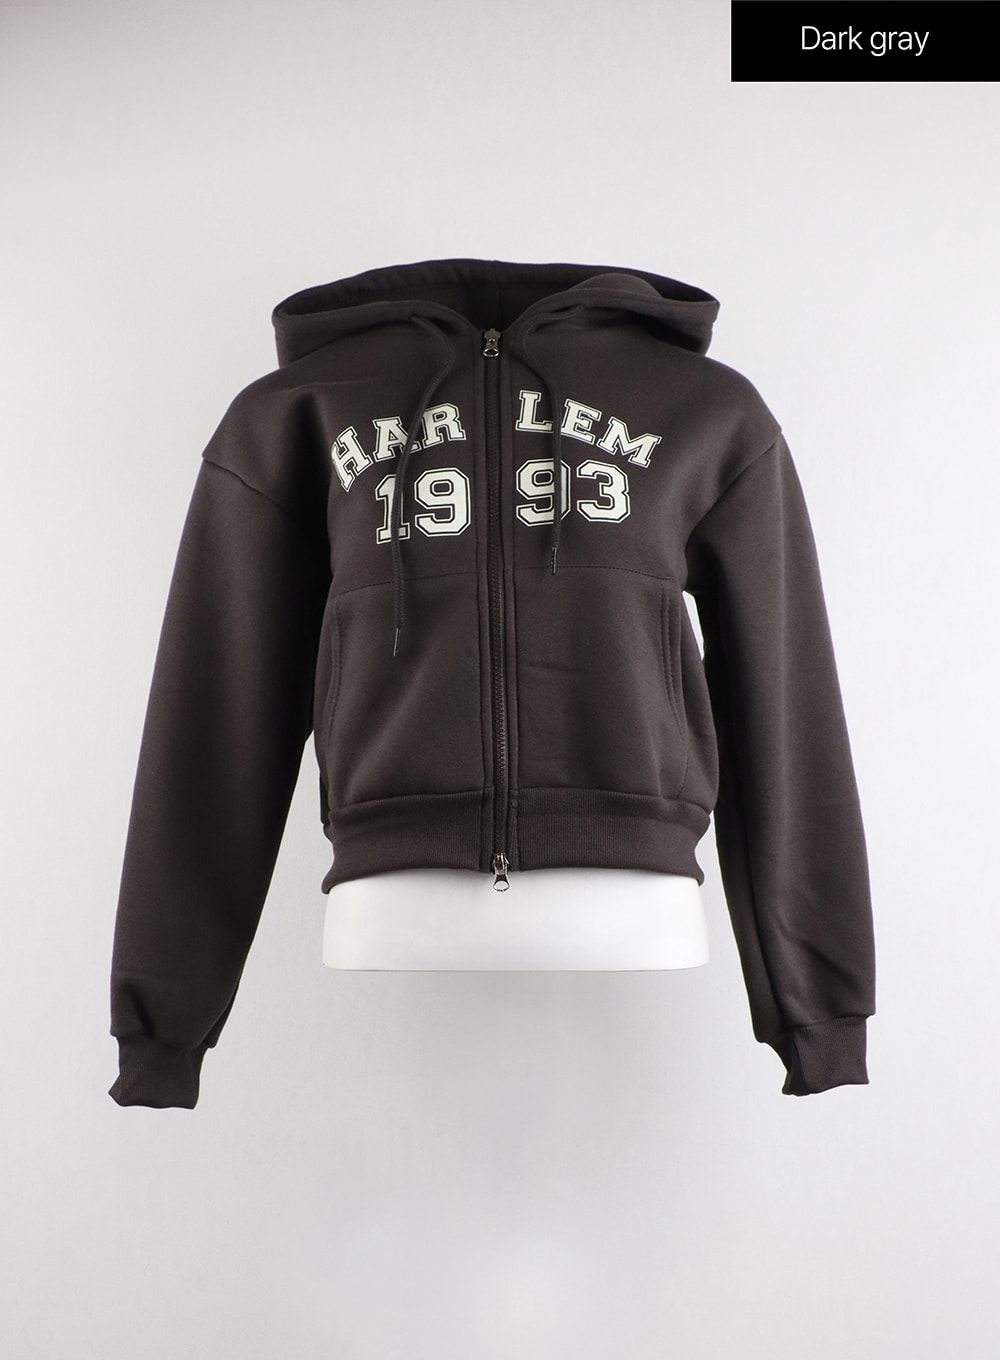 1993-graphic-zip-hoodie-cj417 / Dark gray